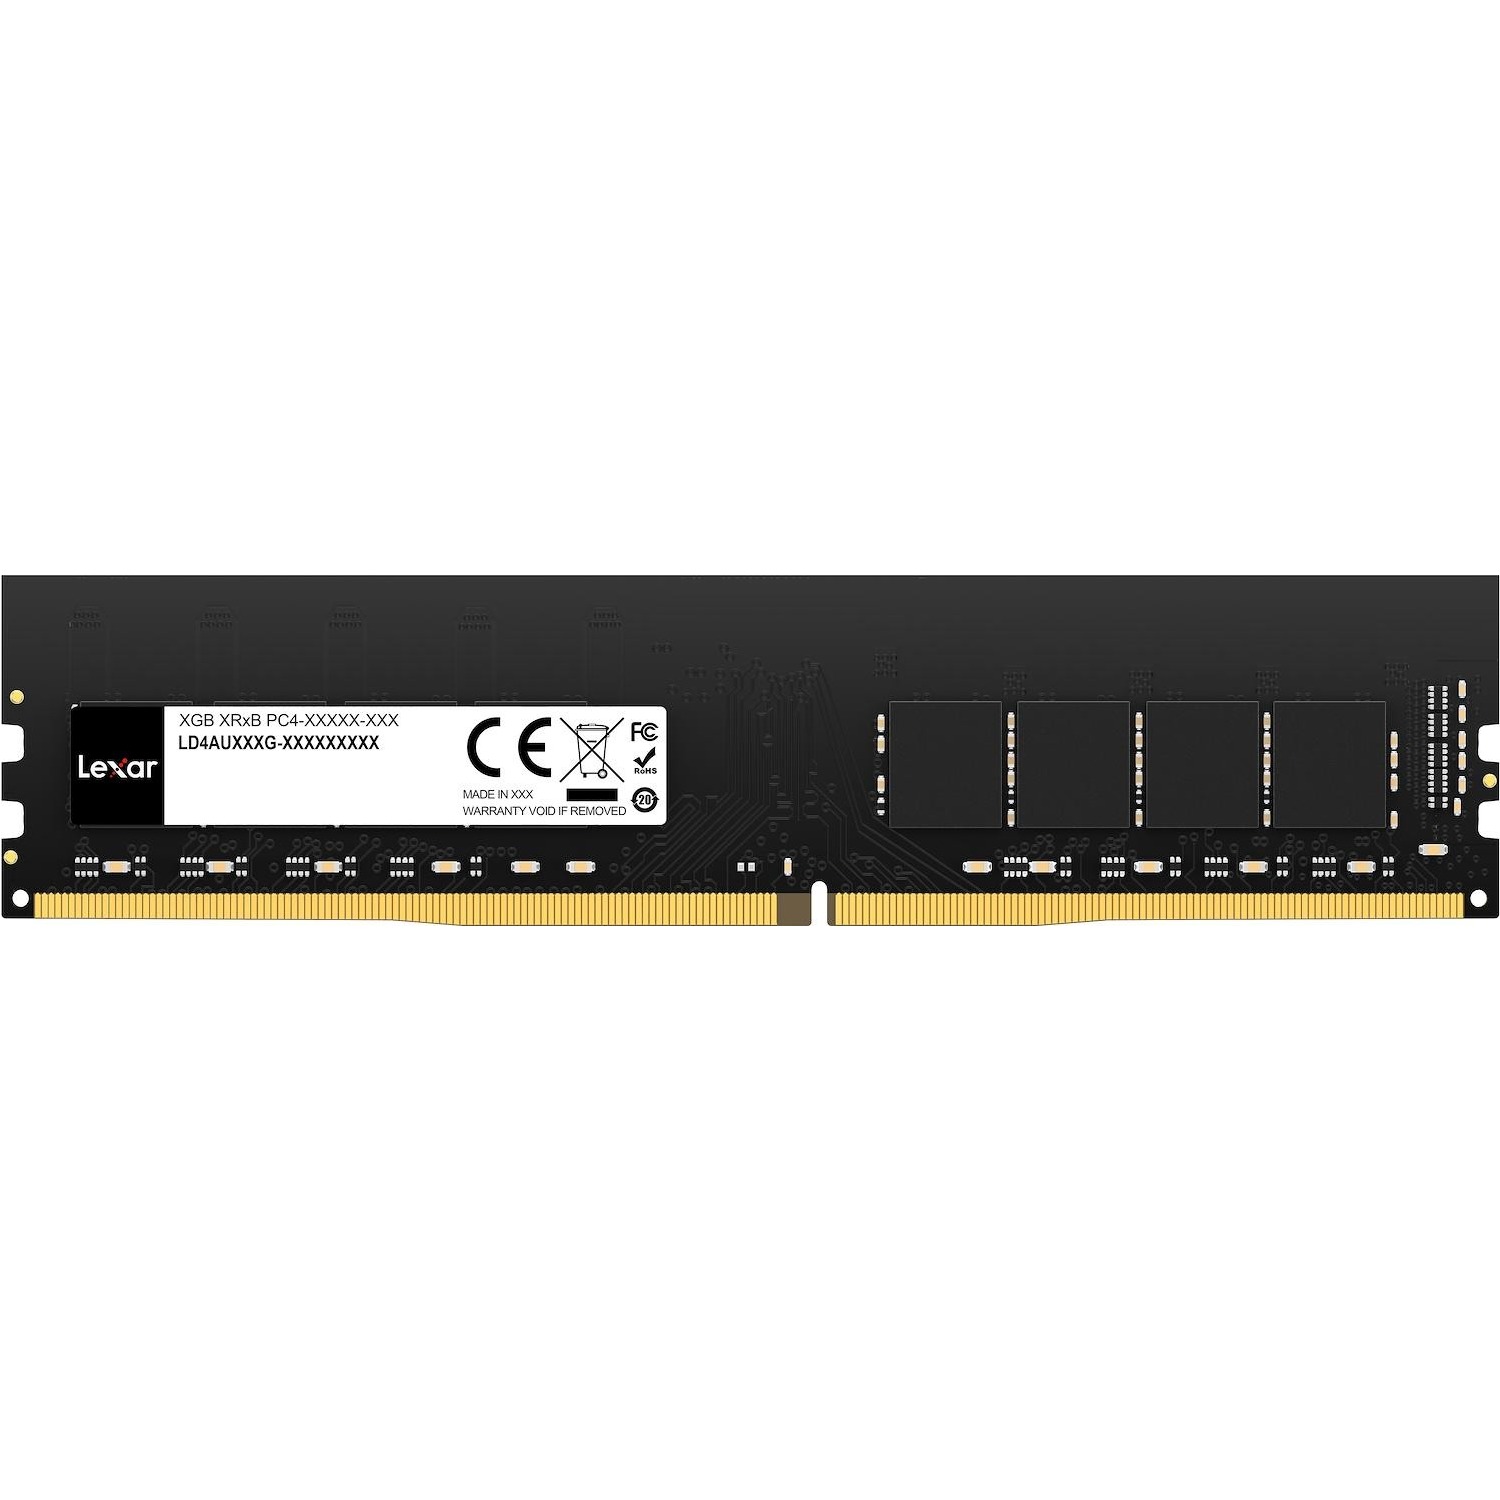 Immagine per RAM Lexar DDR4 8GB 288 PIN SO-DIMM 3200MBPS da DIMOStore